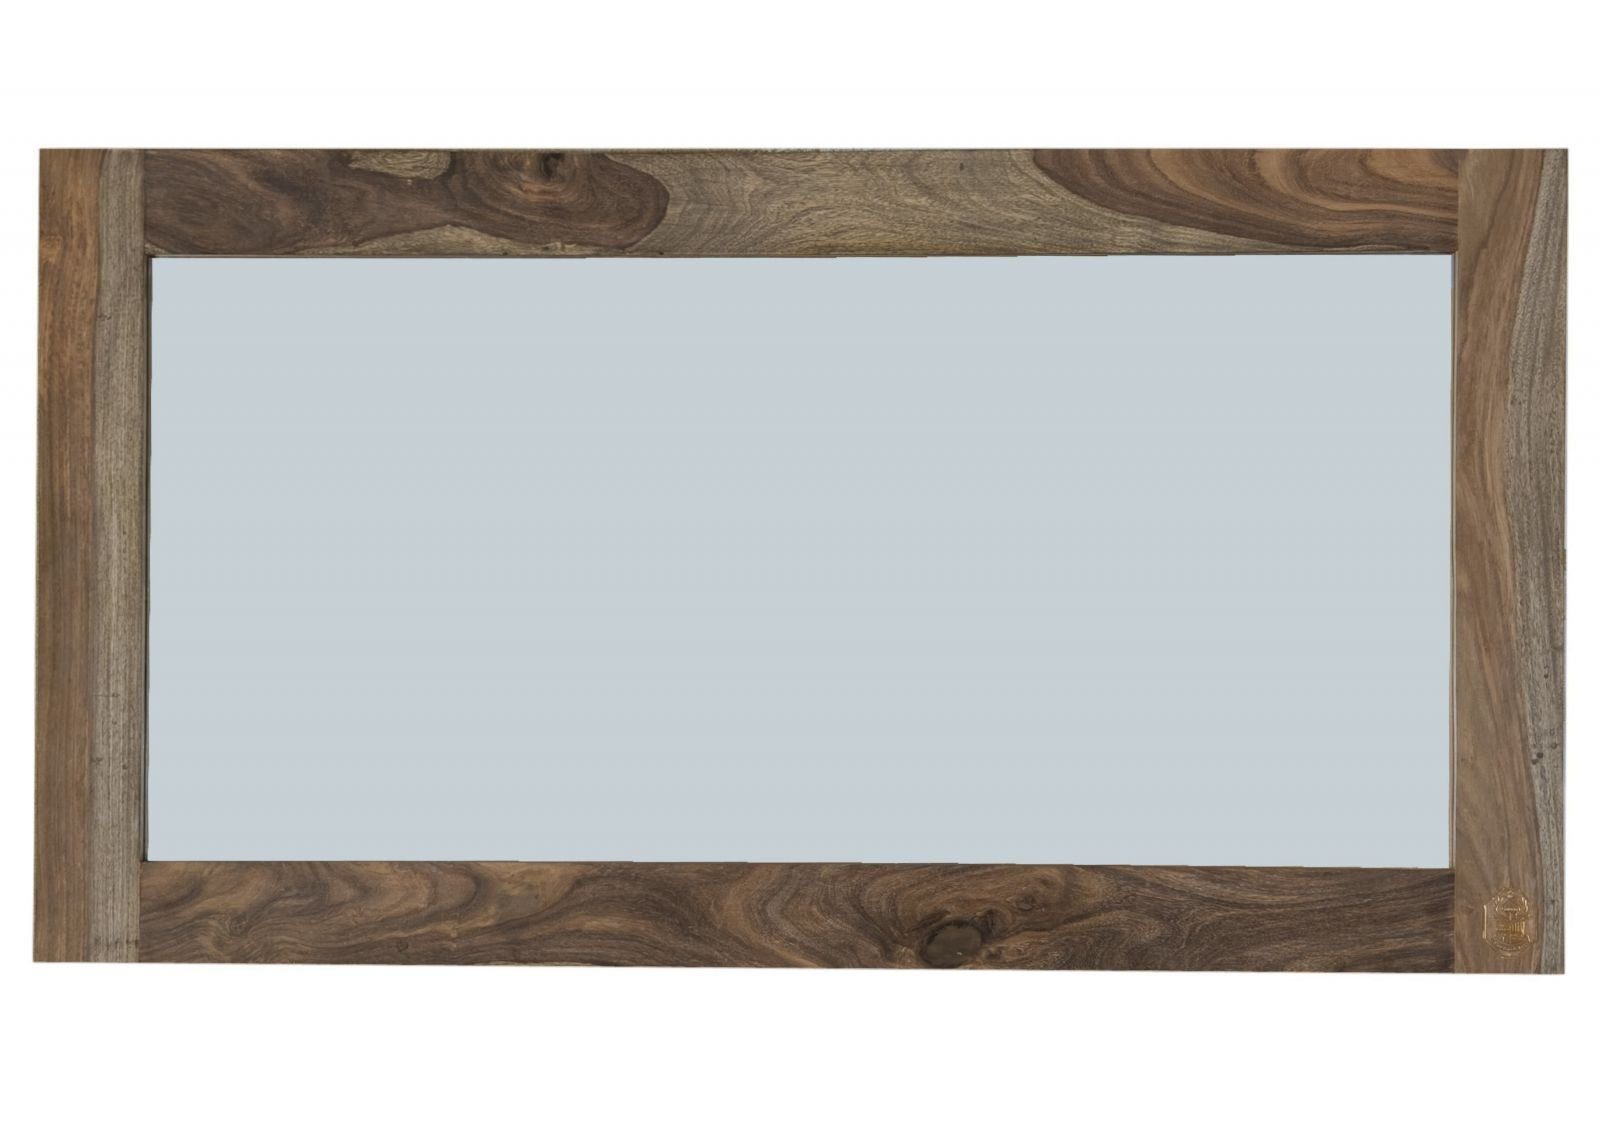 Massivmoebel24 Spiegel NATURE vertikal Sheesham geölt grau horizontal geradliniges Spiegel, Massivholz 130x3x70 anbringbar, und GREY montiert) Design, (Moderner